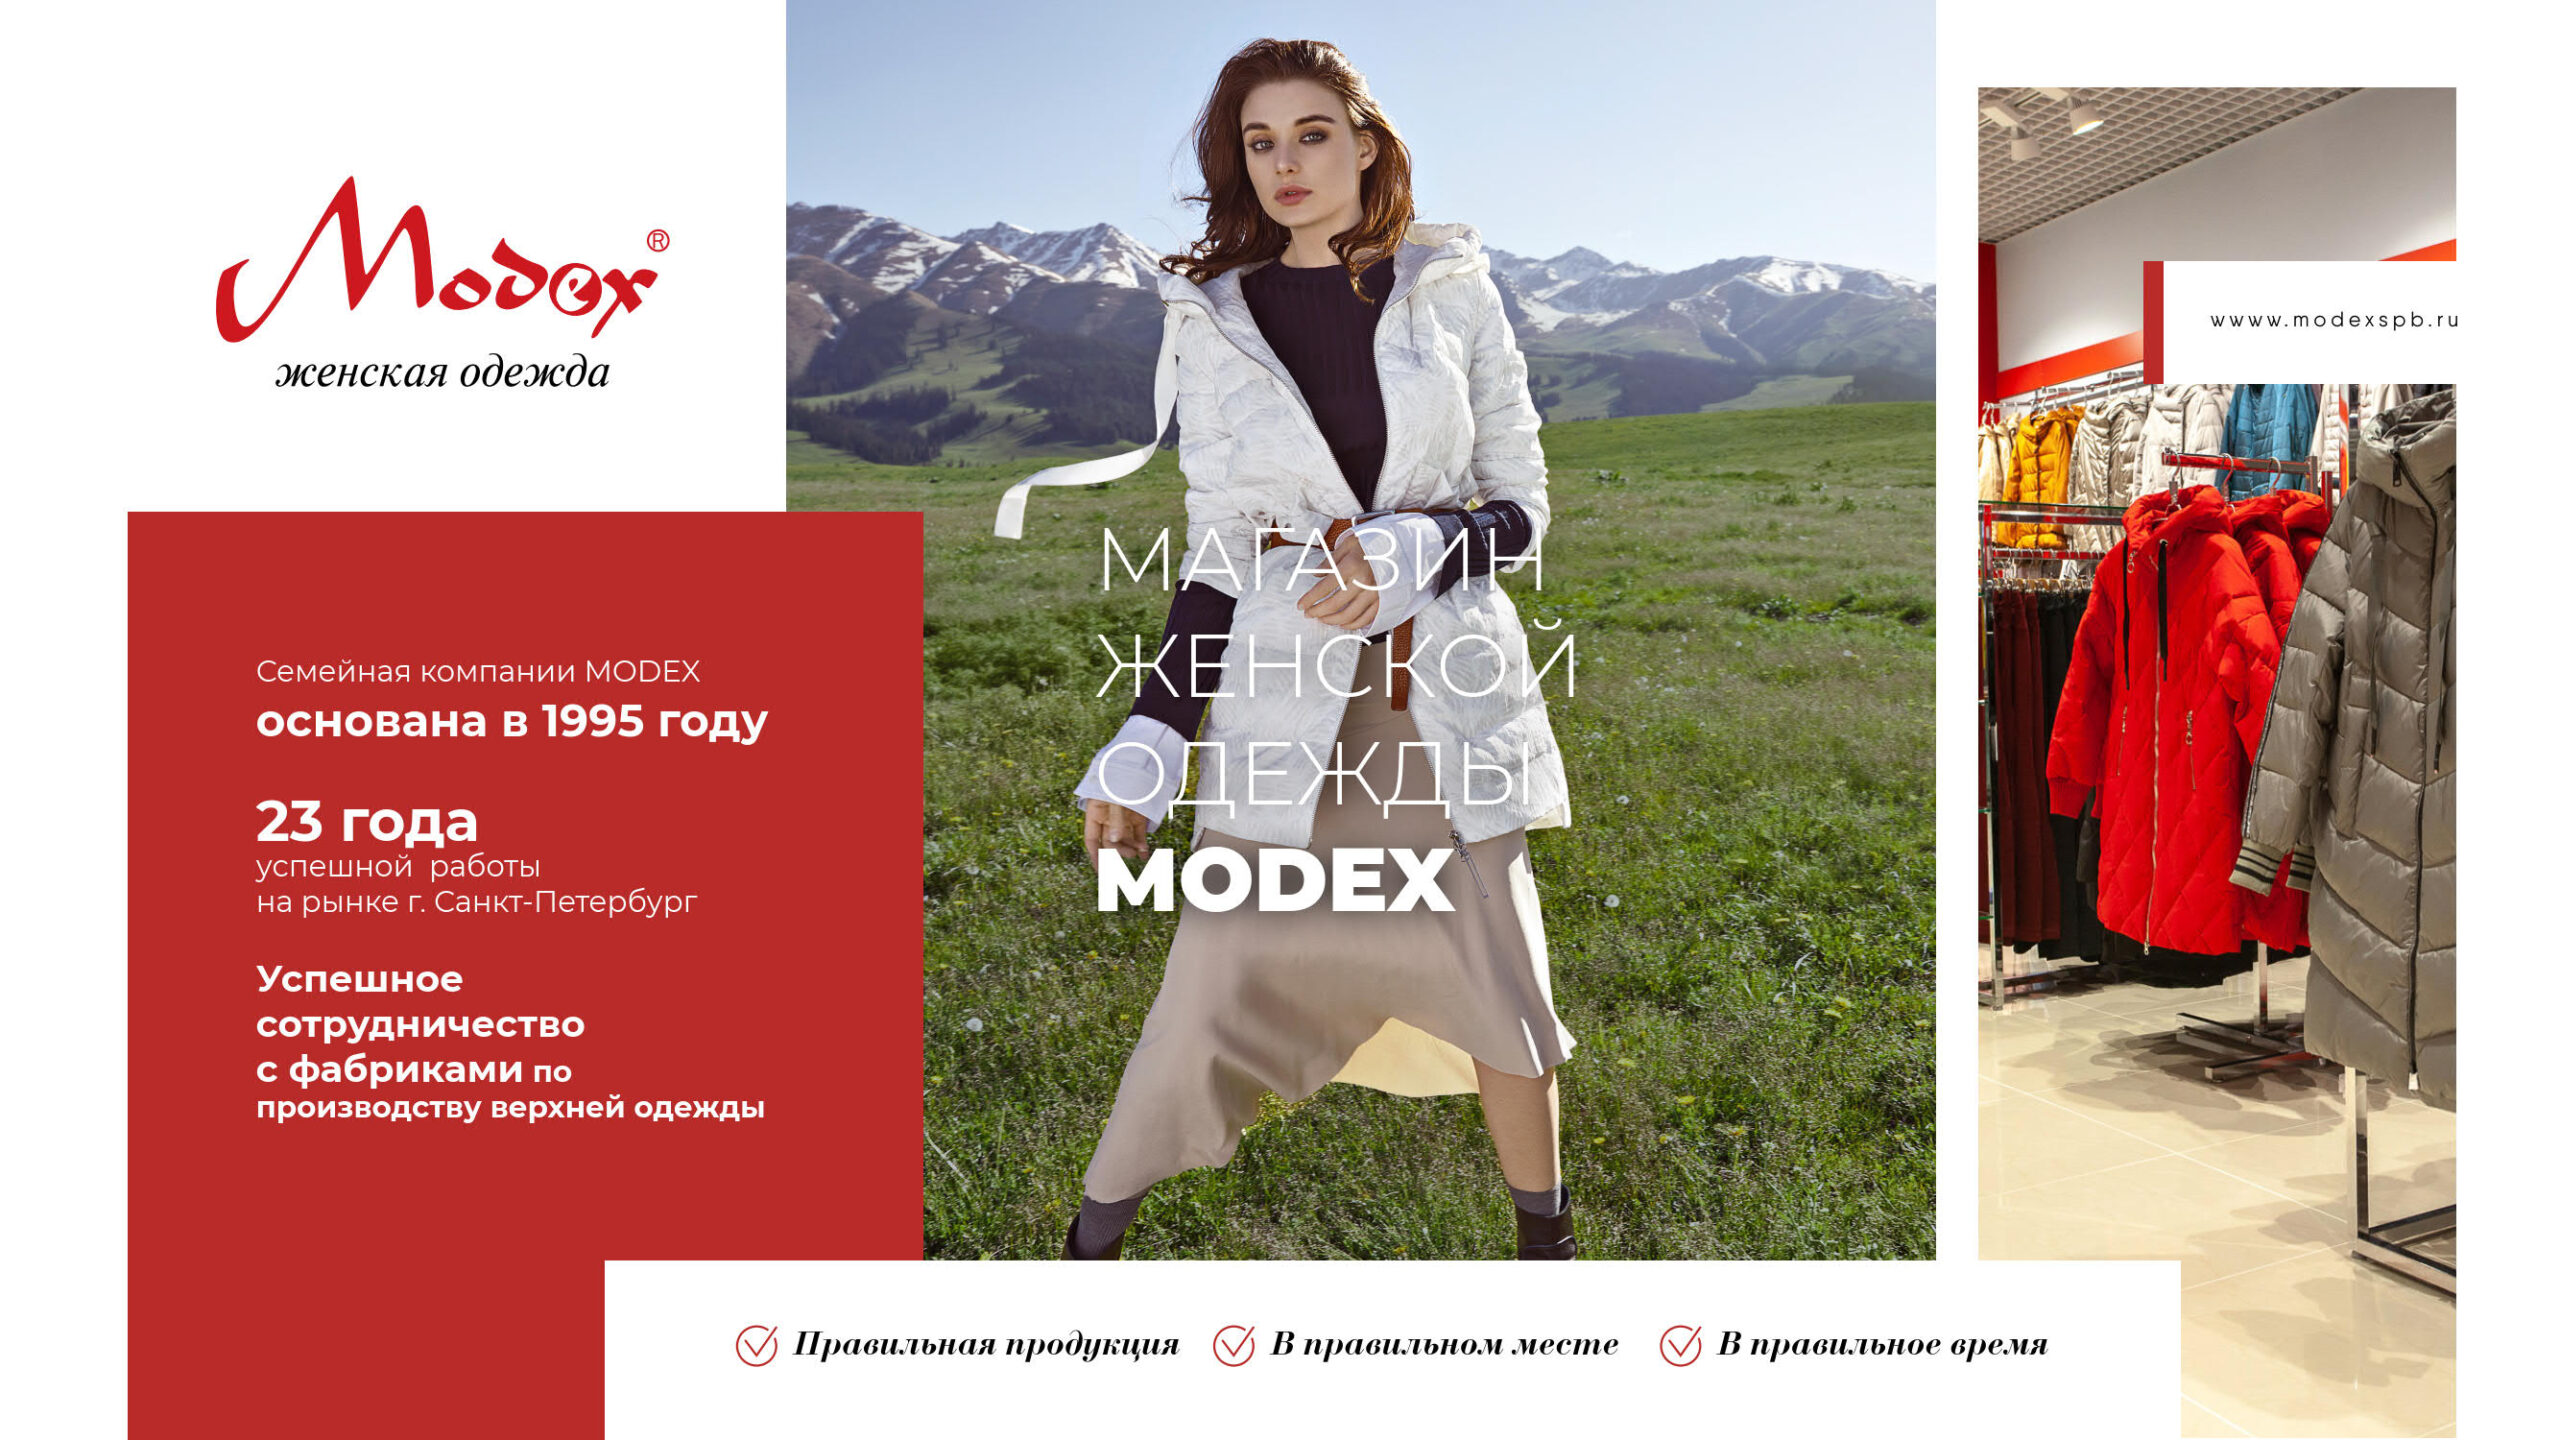 Презентация магазинов женской одежды Modex для аренды в ТРЦ слайд 1